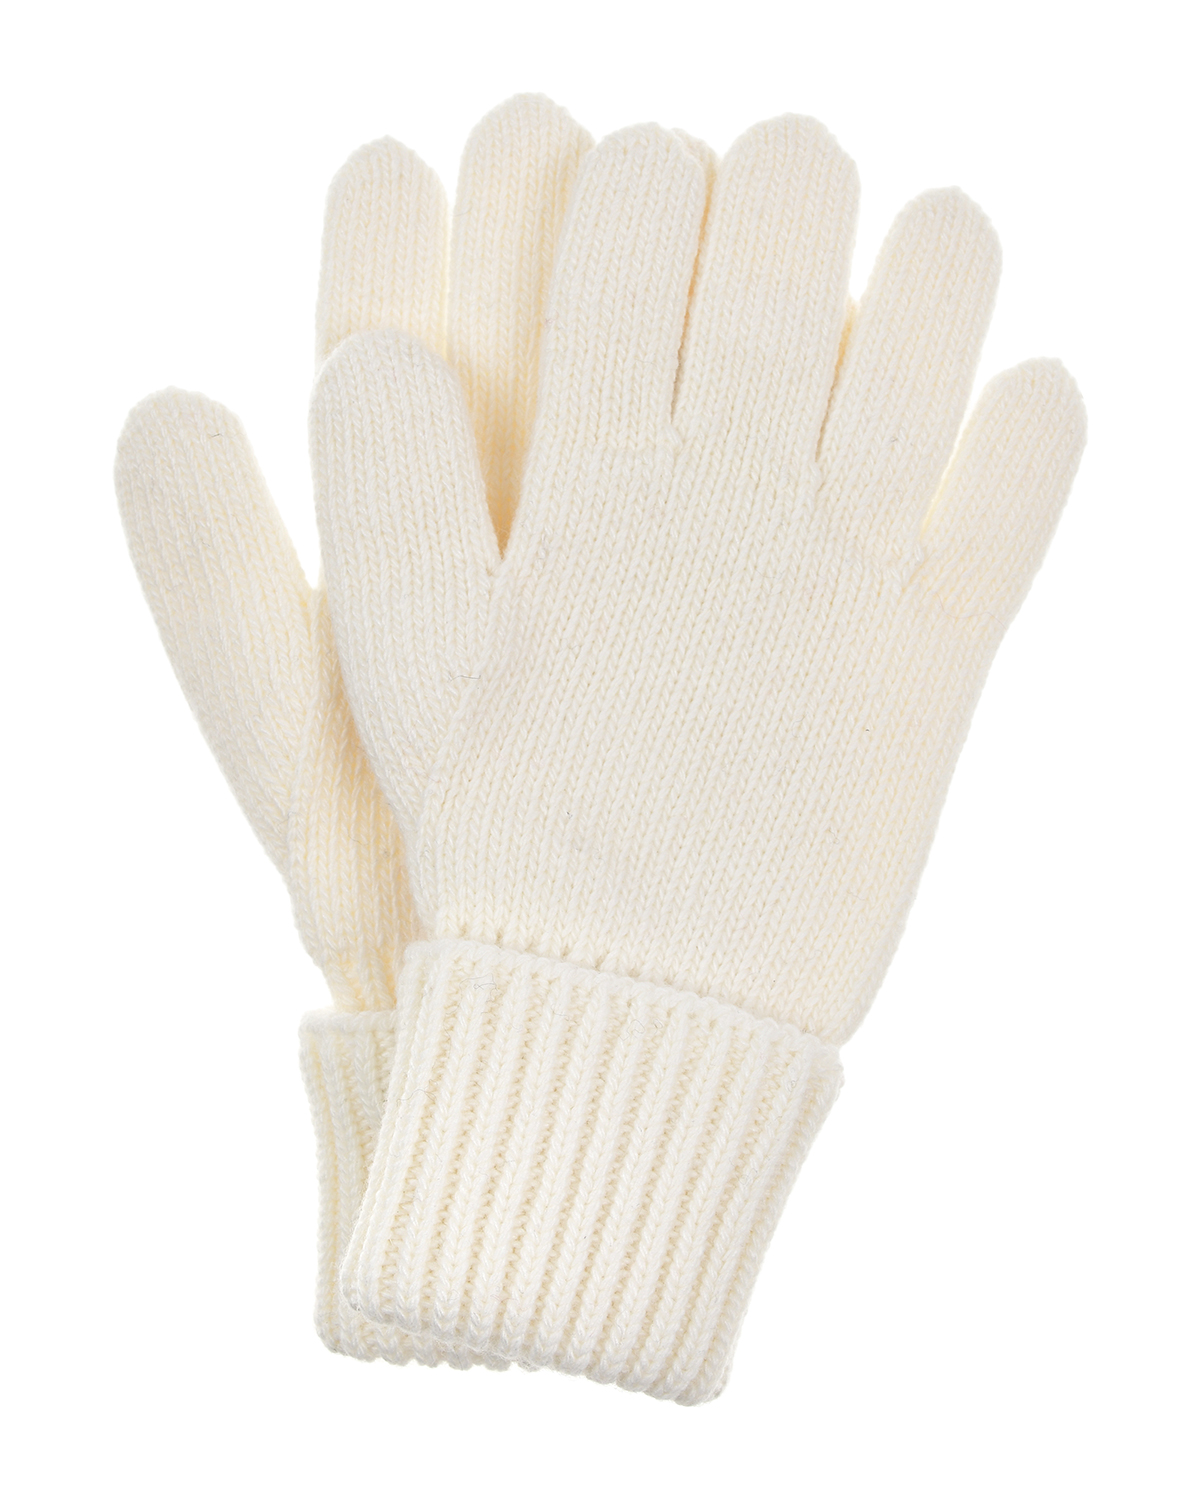 Шерстяные перчатки белого цвета Chobi детские, размер 4